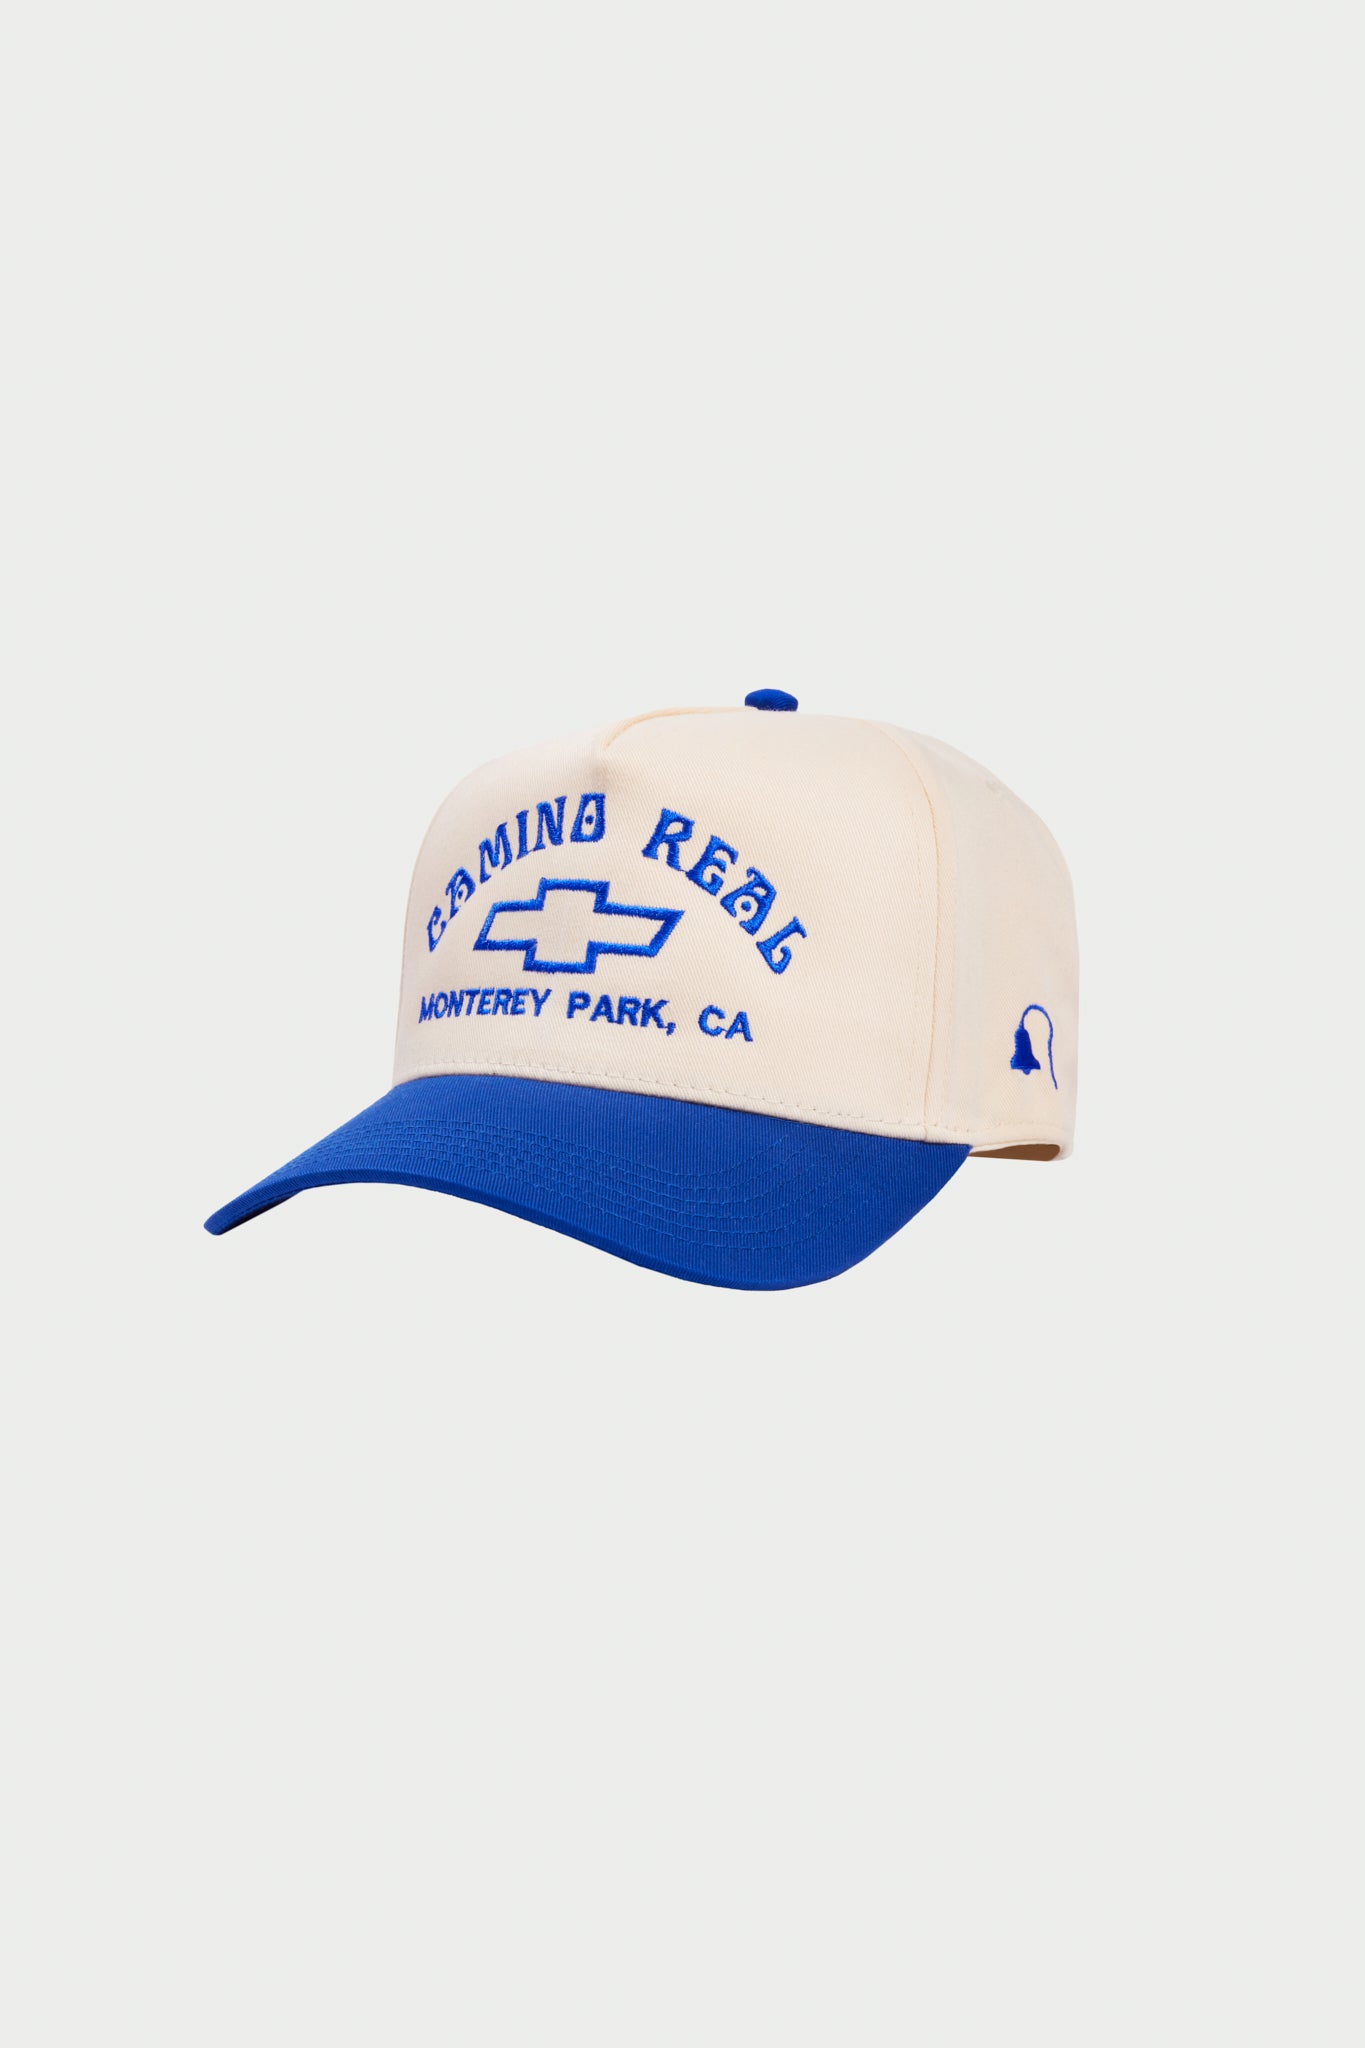 CAMINO REAL CHEVY TWO-TONEDS SNAPBACK HAT (Royal/Natural)